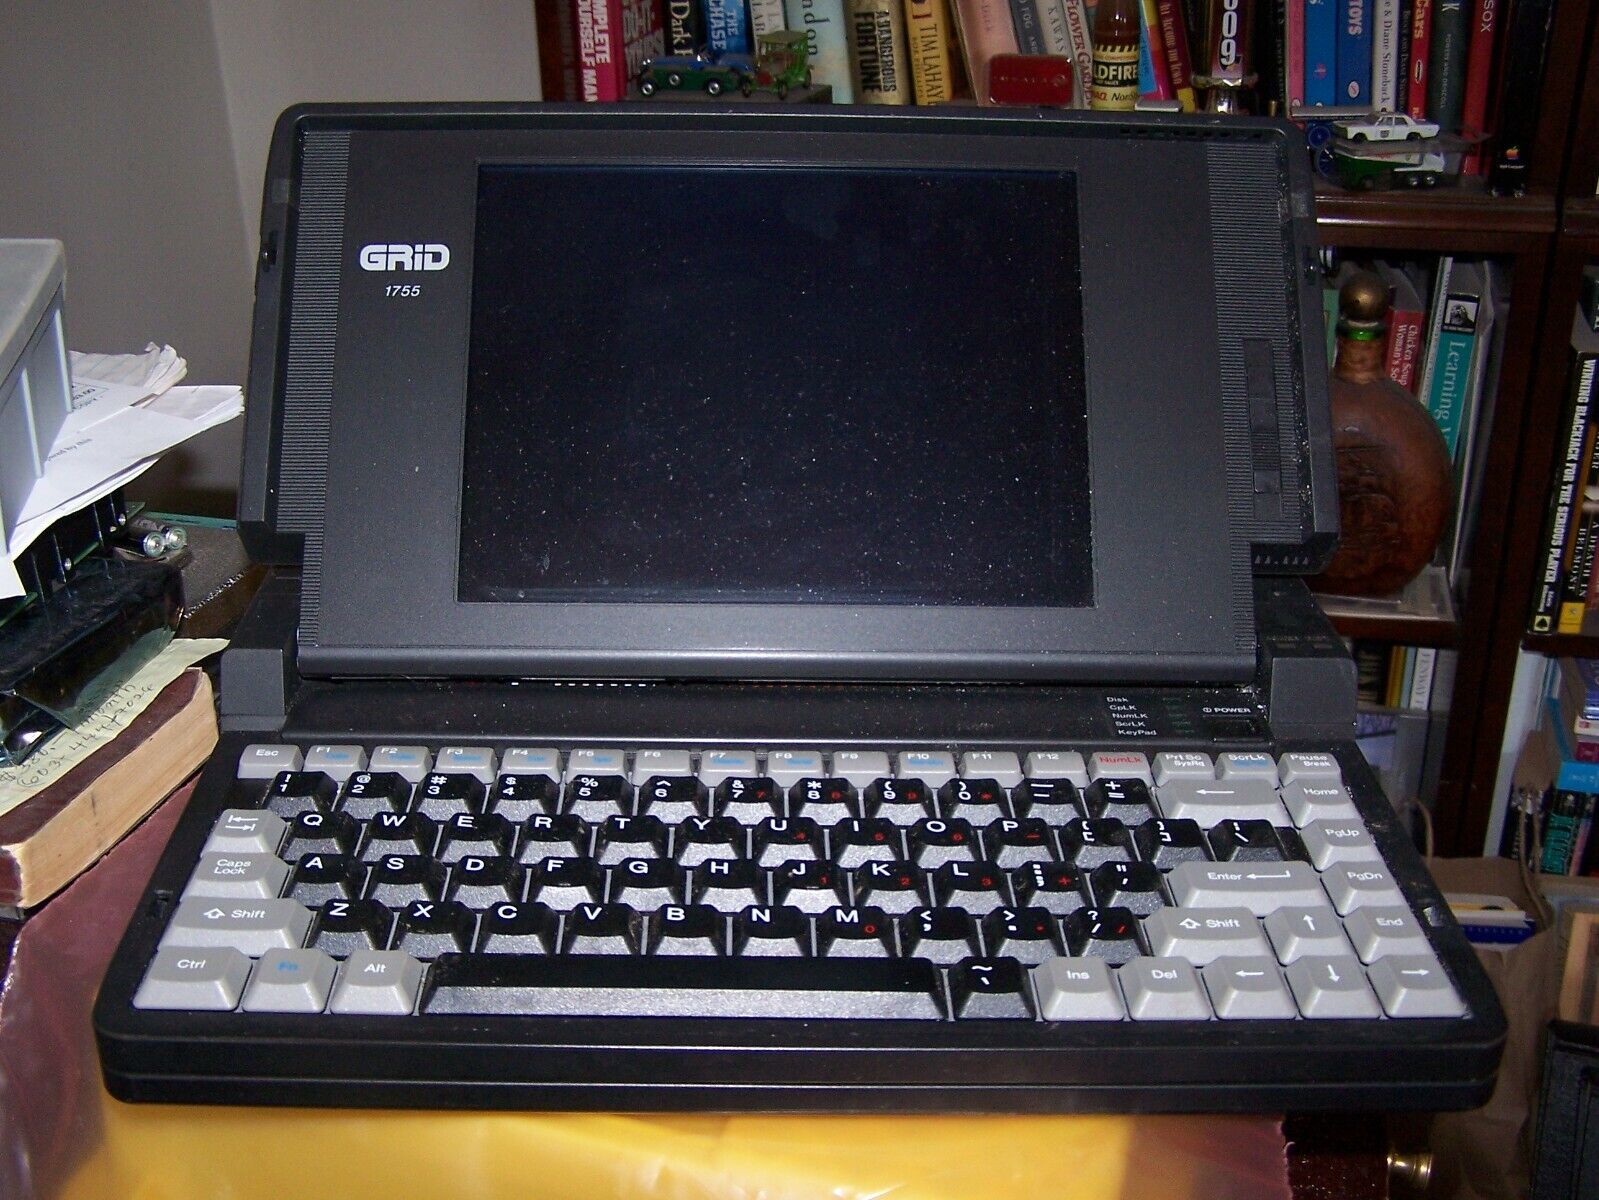 Grid Laptop Model 1755 P/N G20-1755 - Estate Sale SOLD AS IS